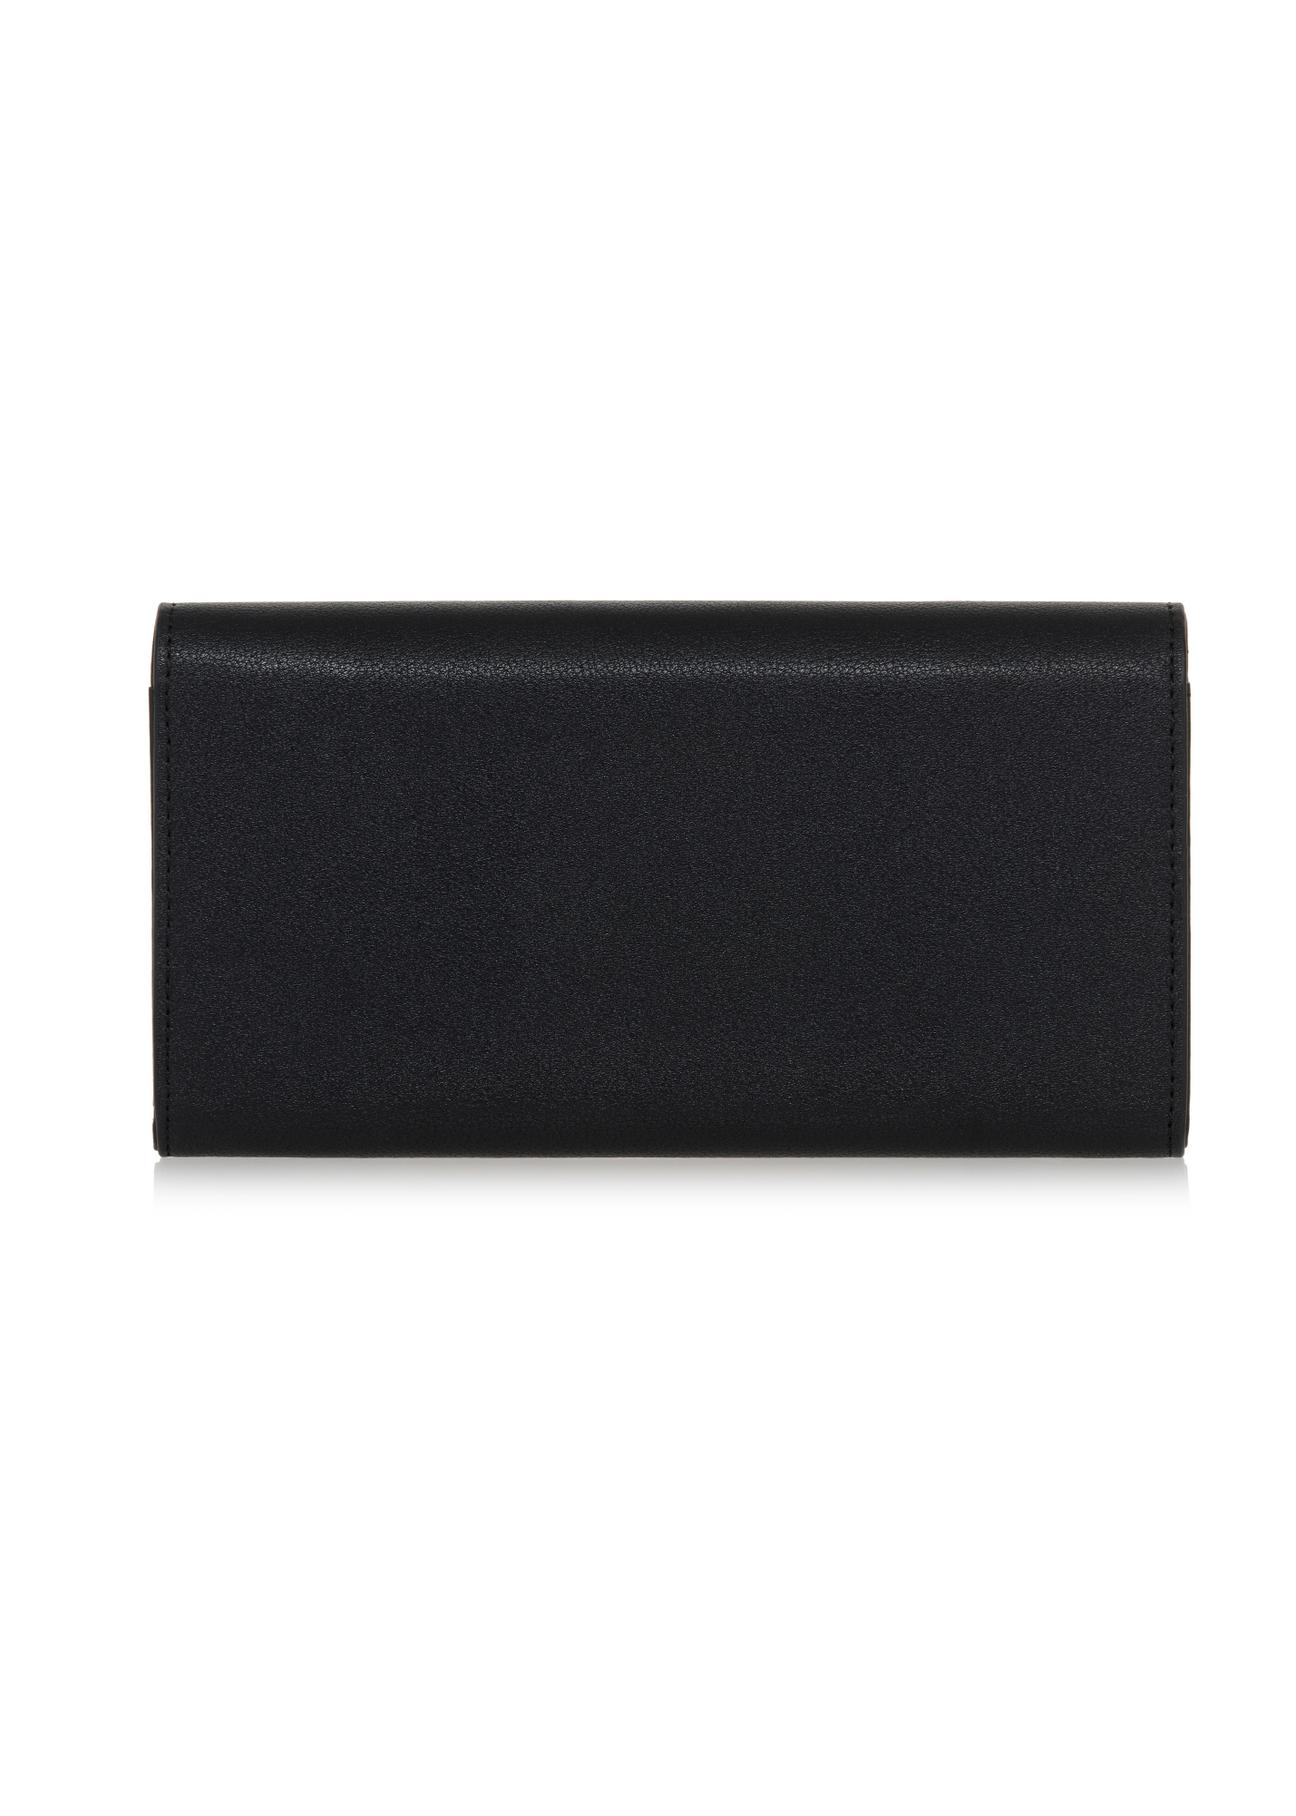 Duży czarny portfel damski ozdobnym paskiem POREC-0357-99(Z23)